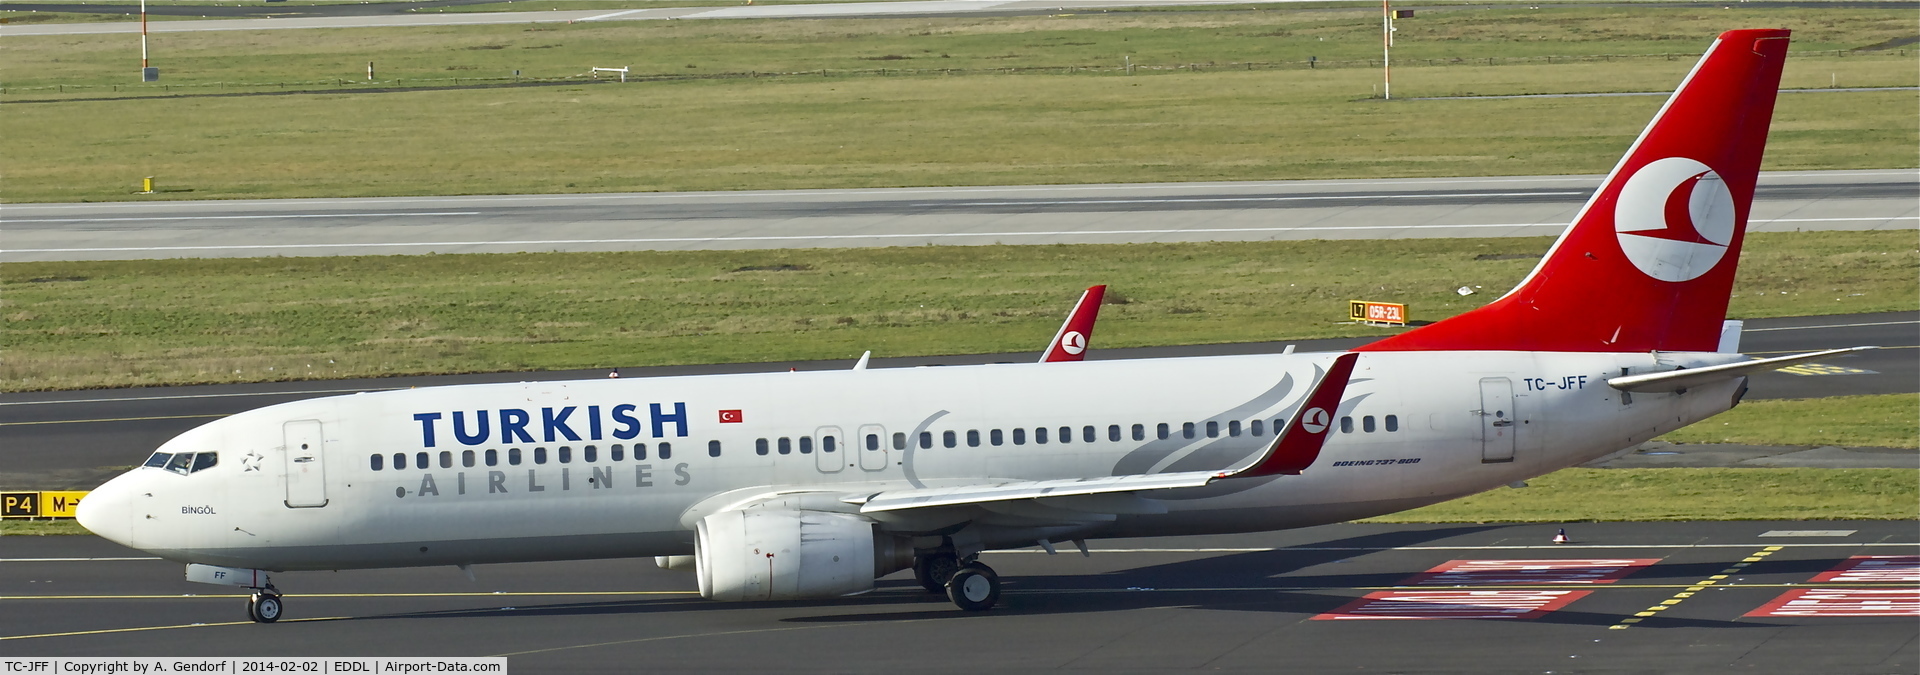 TC-JFF, 1998 Boeing 737-8F2 C/N 29768, Turkish Airlines, is here taxiing at Düsseldorf Int'l (EDDL)